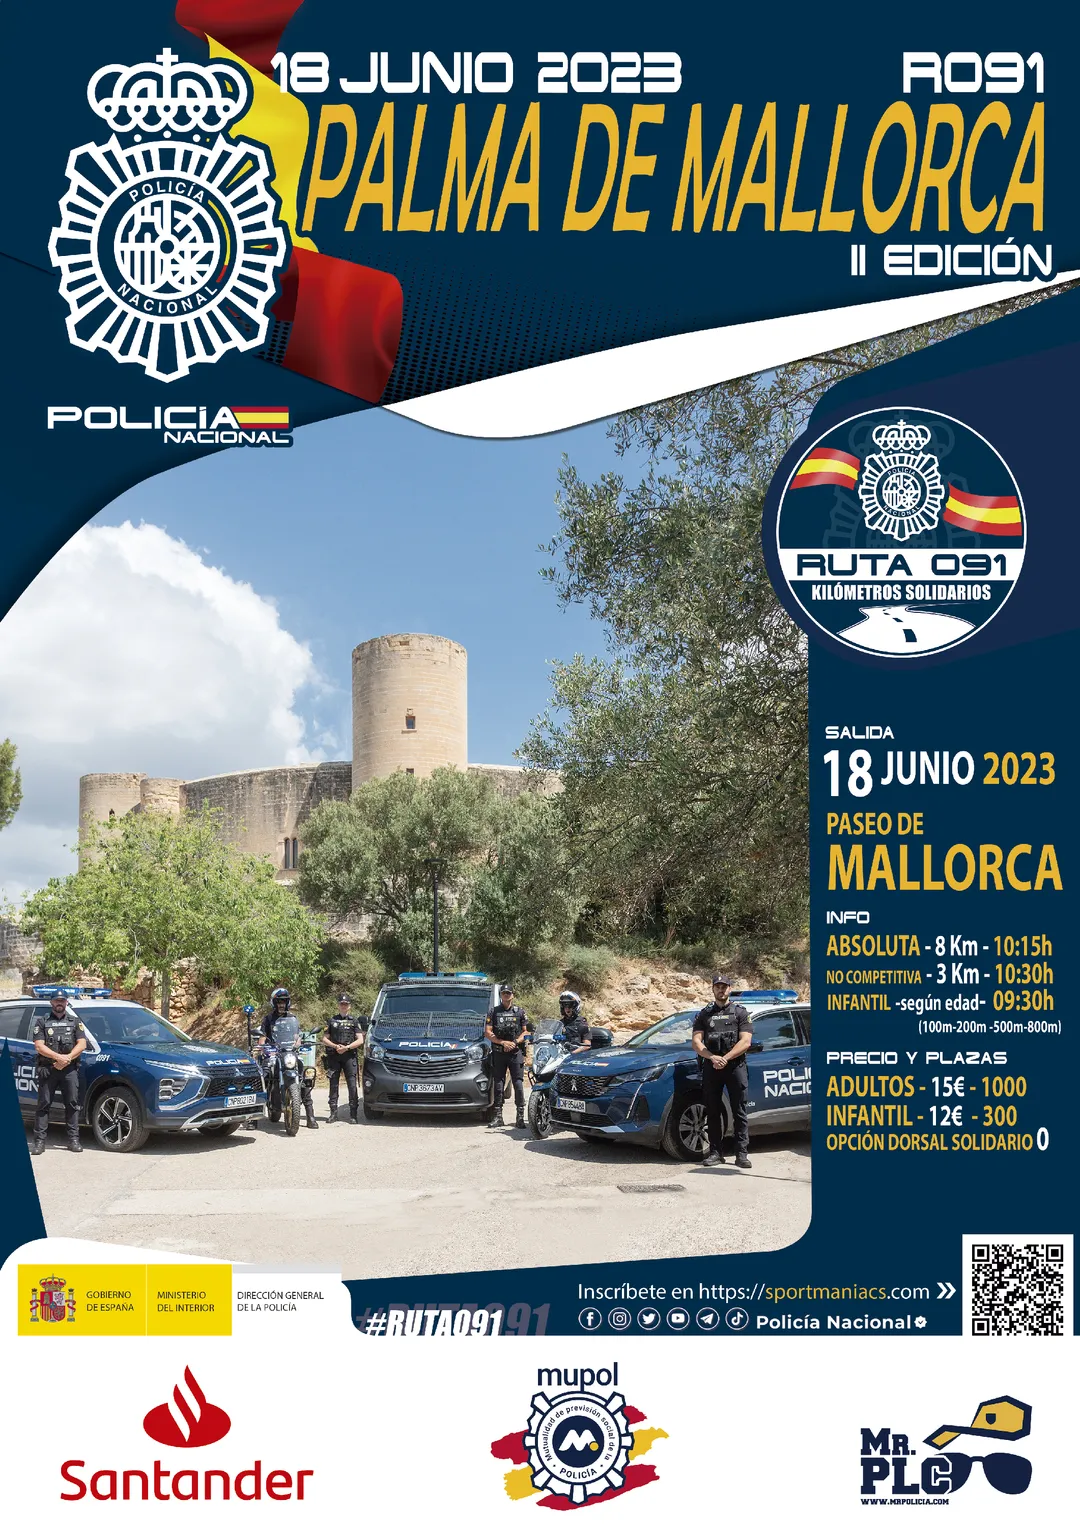 Carrera solidaria Ruta 091 Palma de Mallorca